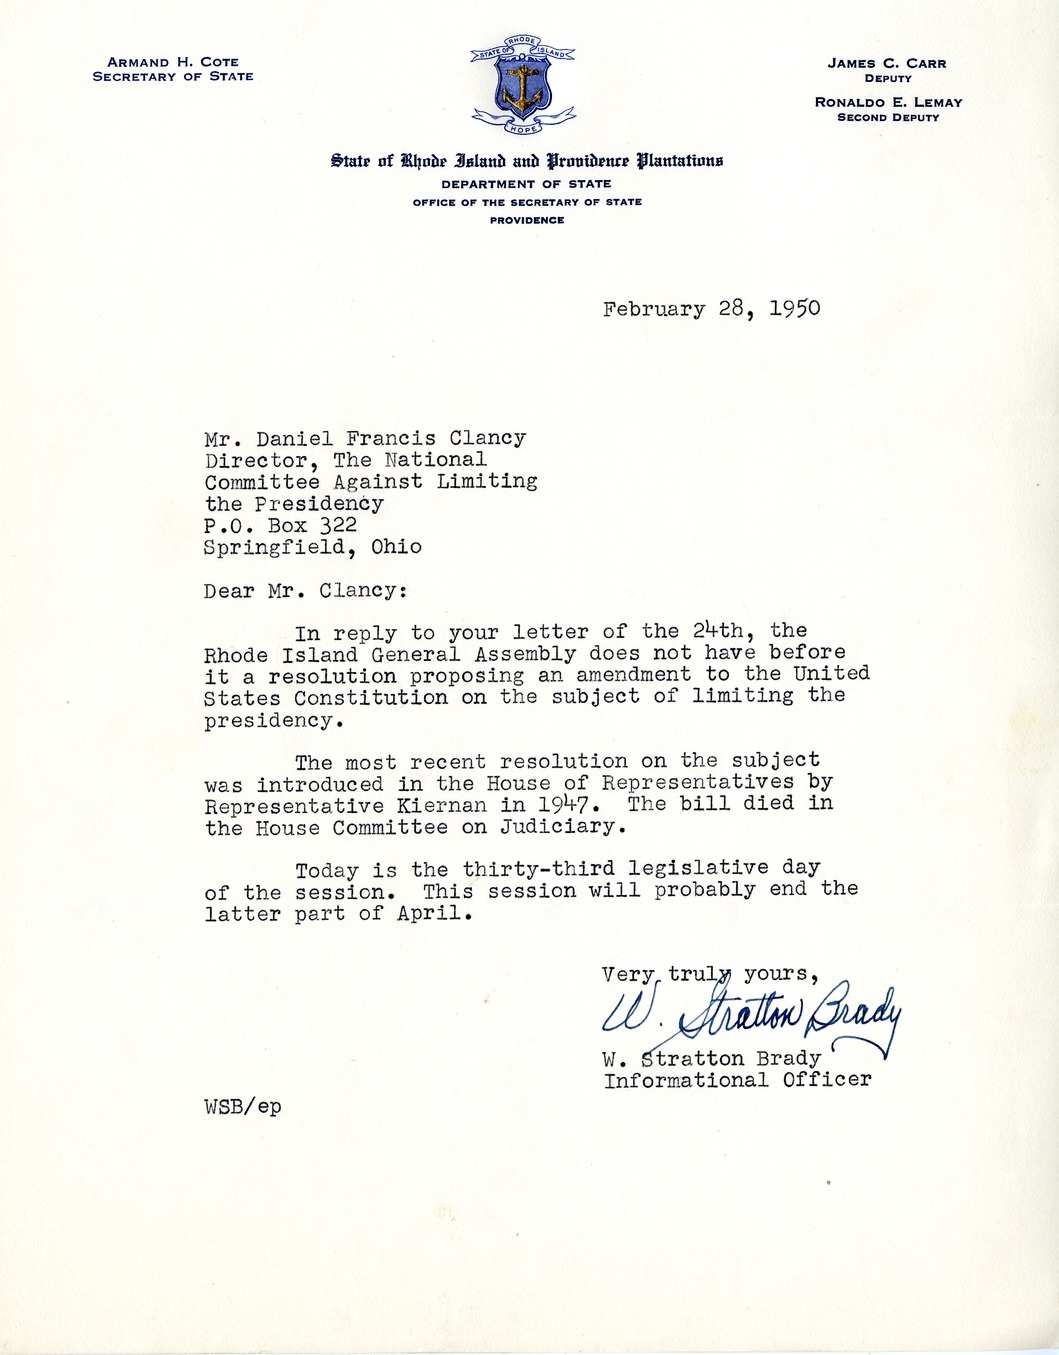 Letter from W. Stratton Brady to Daniel F. Clancy